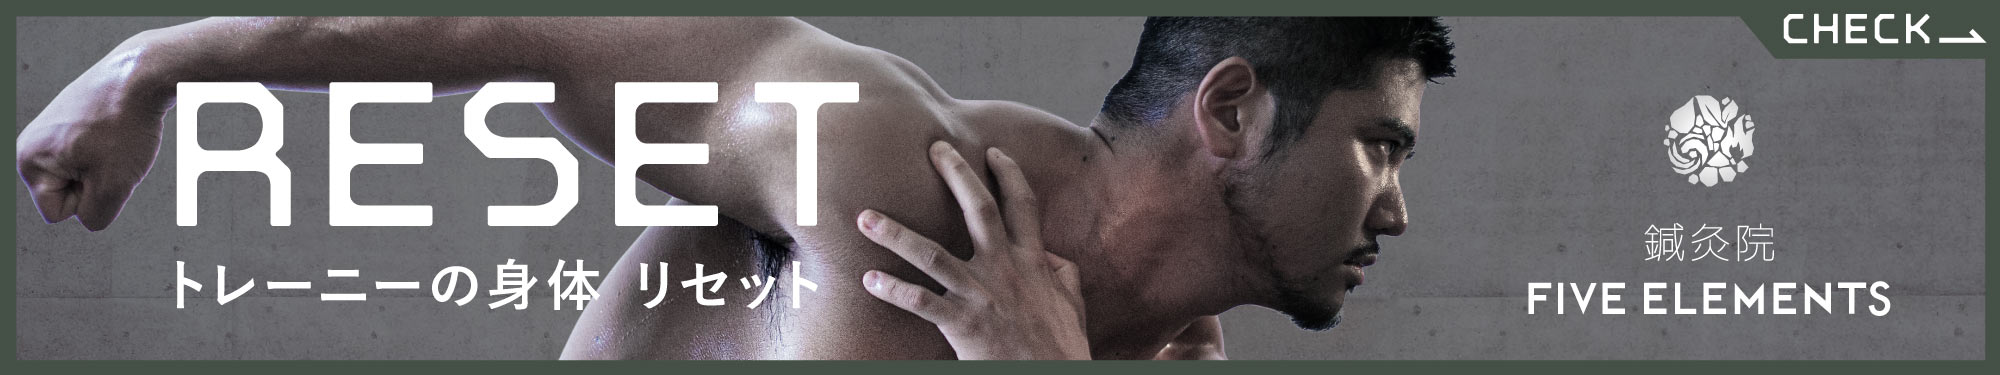 筋肉質な男性モデルによるトレーニーの身体リセットページへの広告バナー